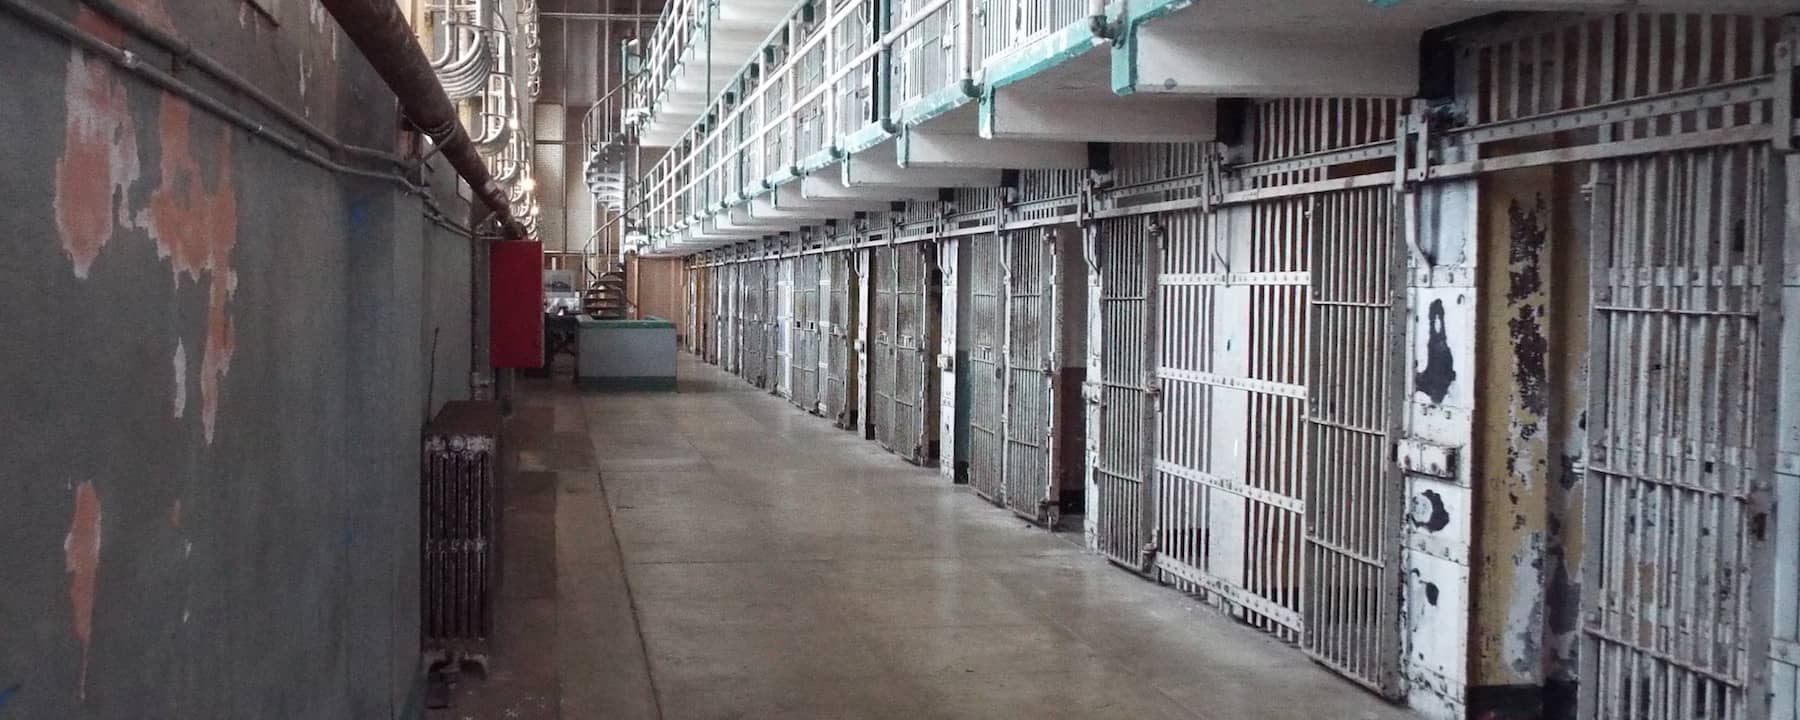 San Francisco and Alcatraz Island Prison Trip